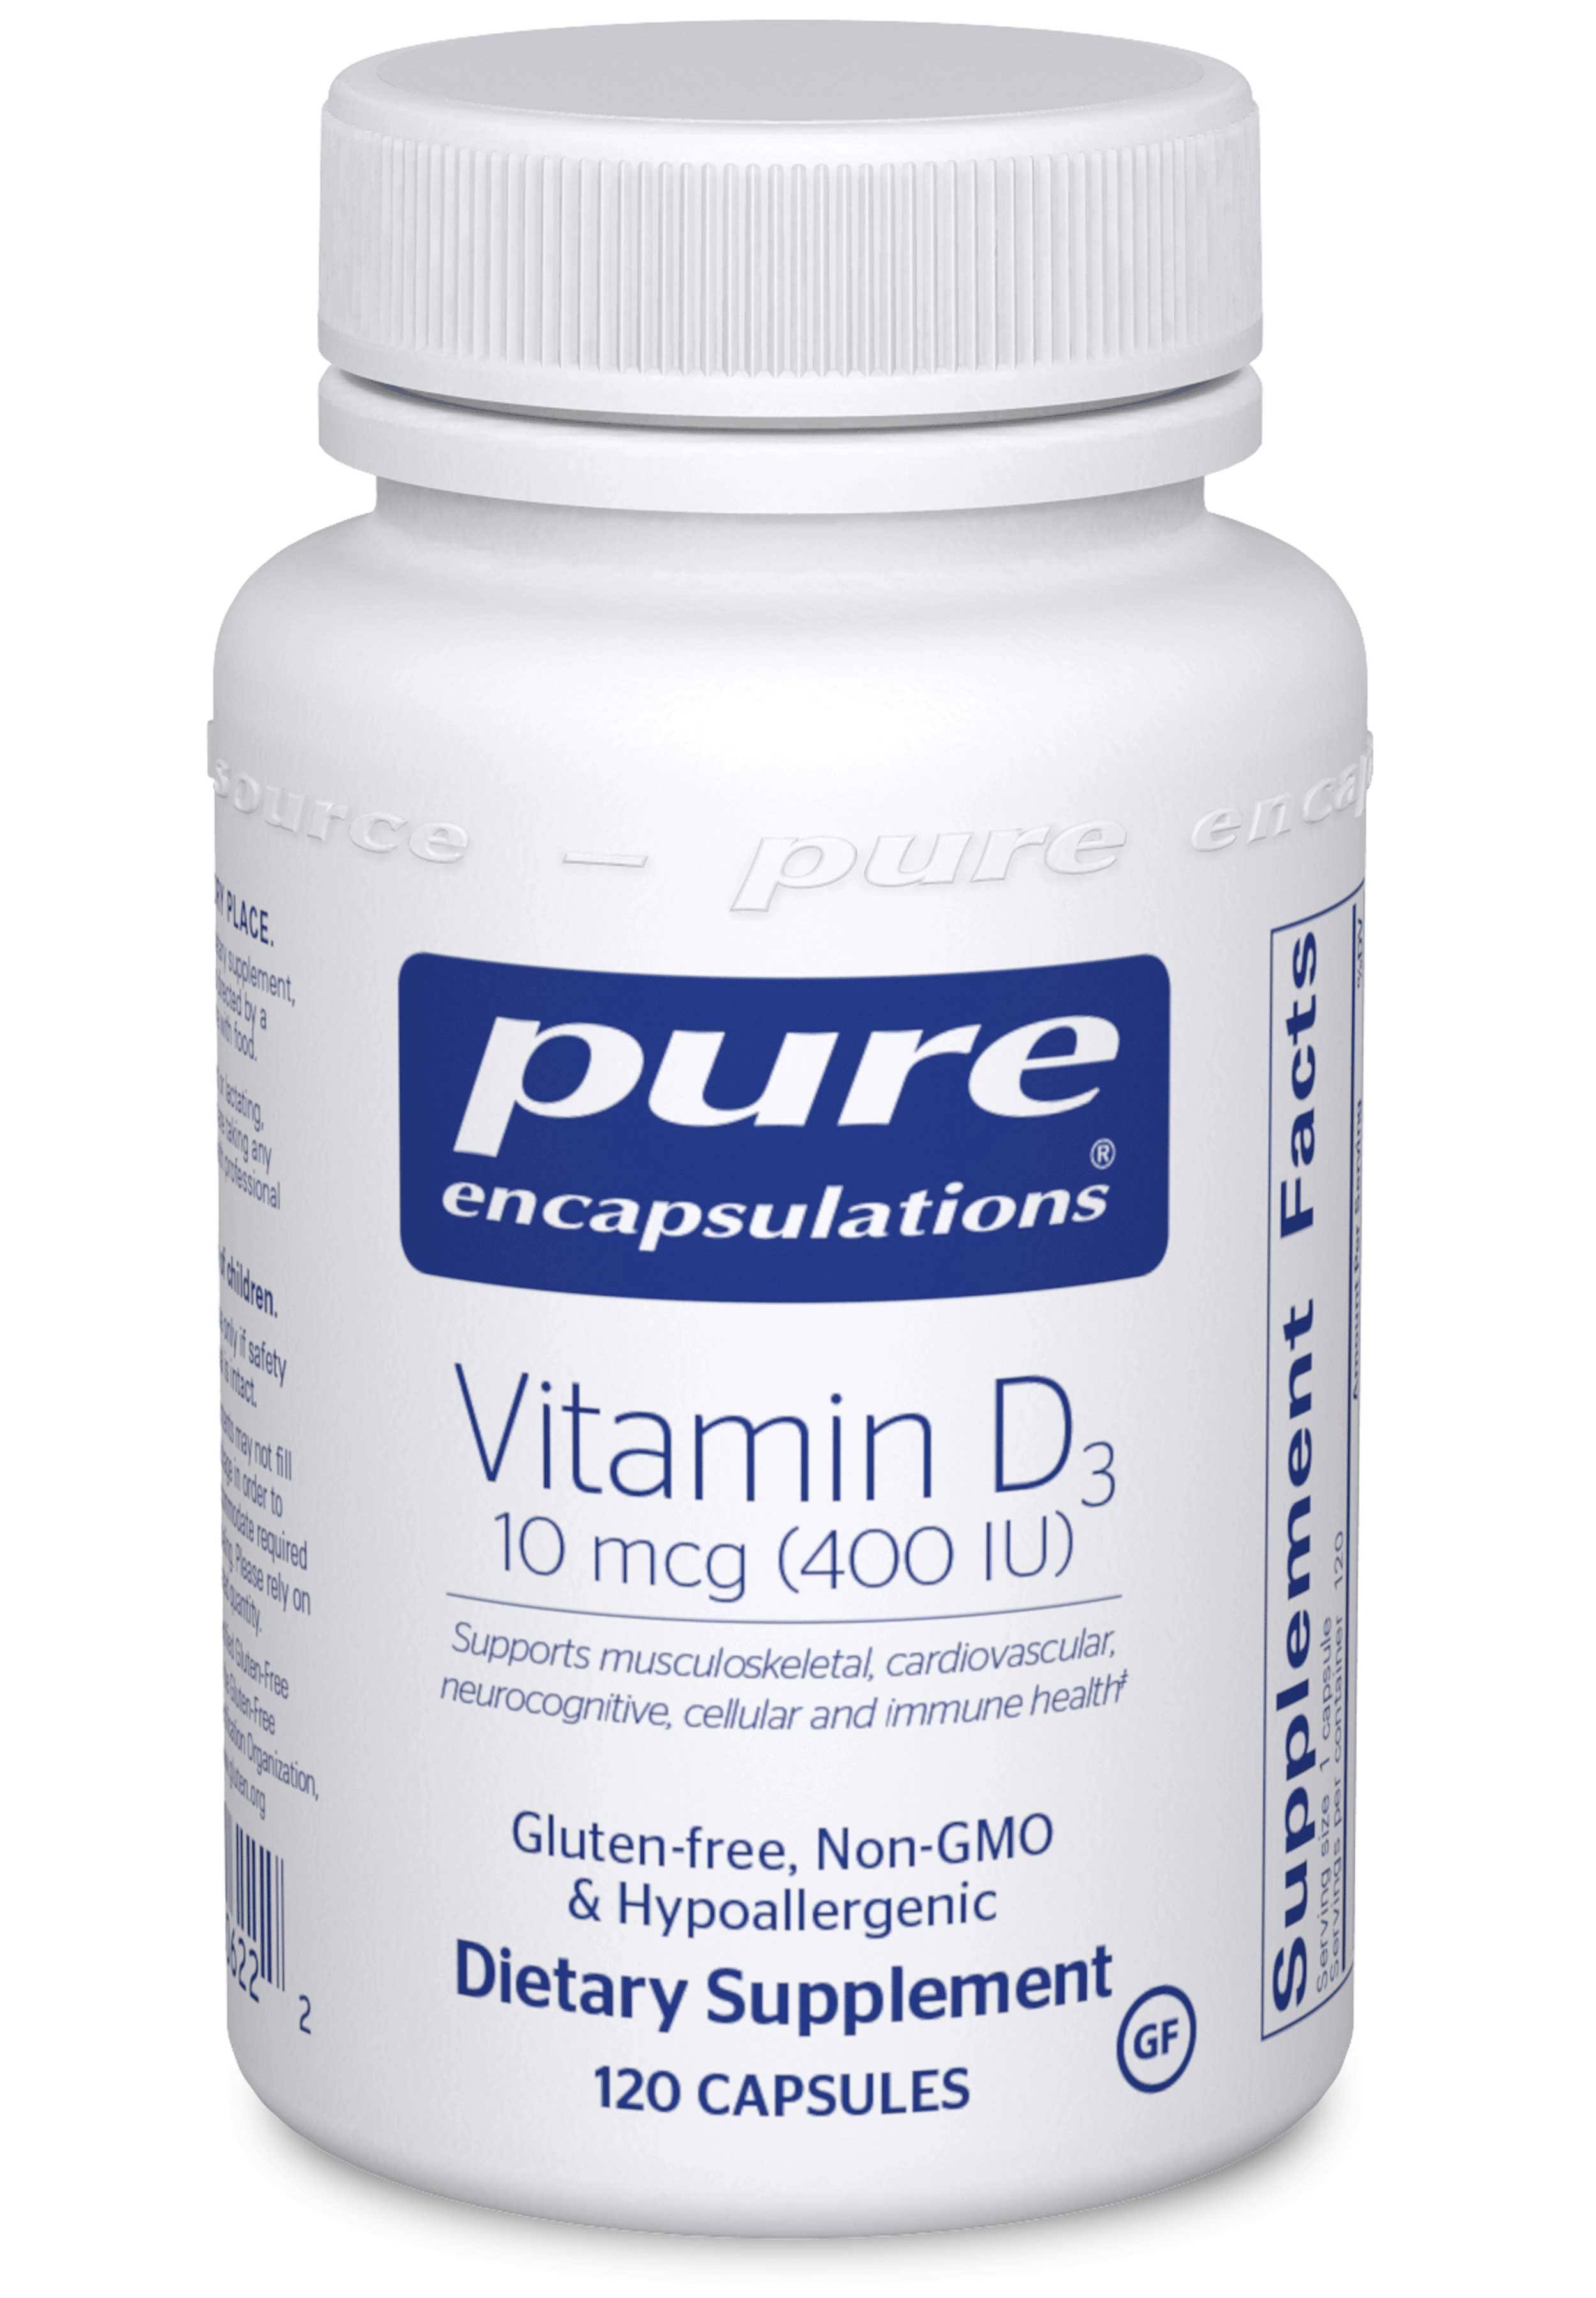 Pure Encapsulations - Vitamin D3 120 Capsules 400 IU